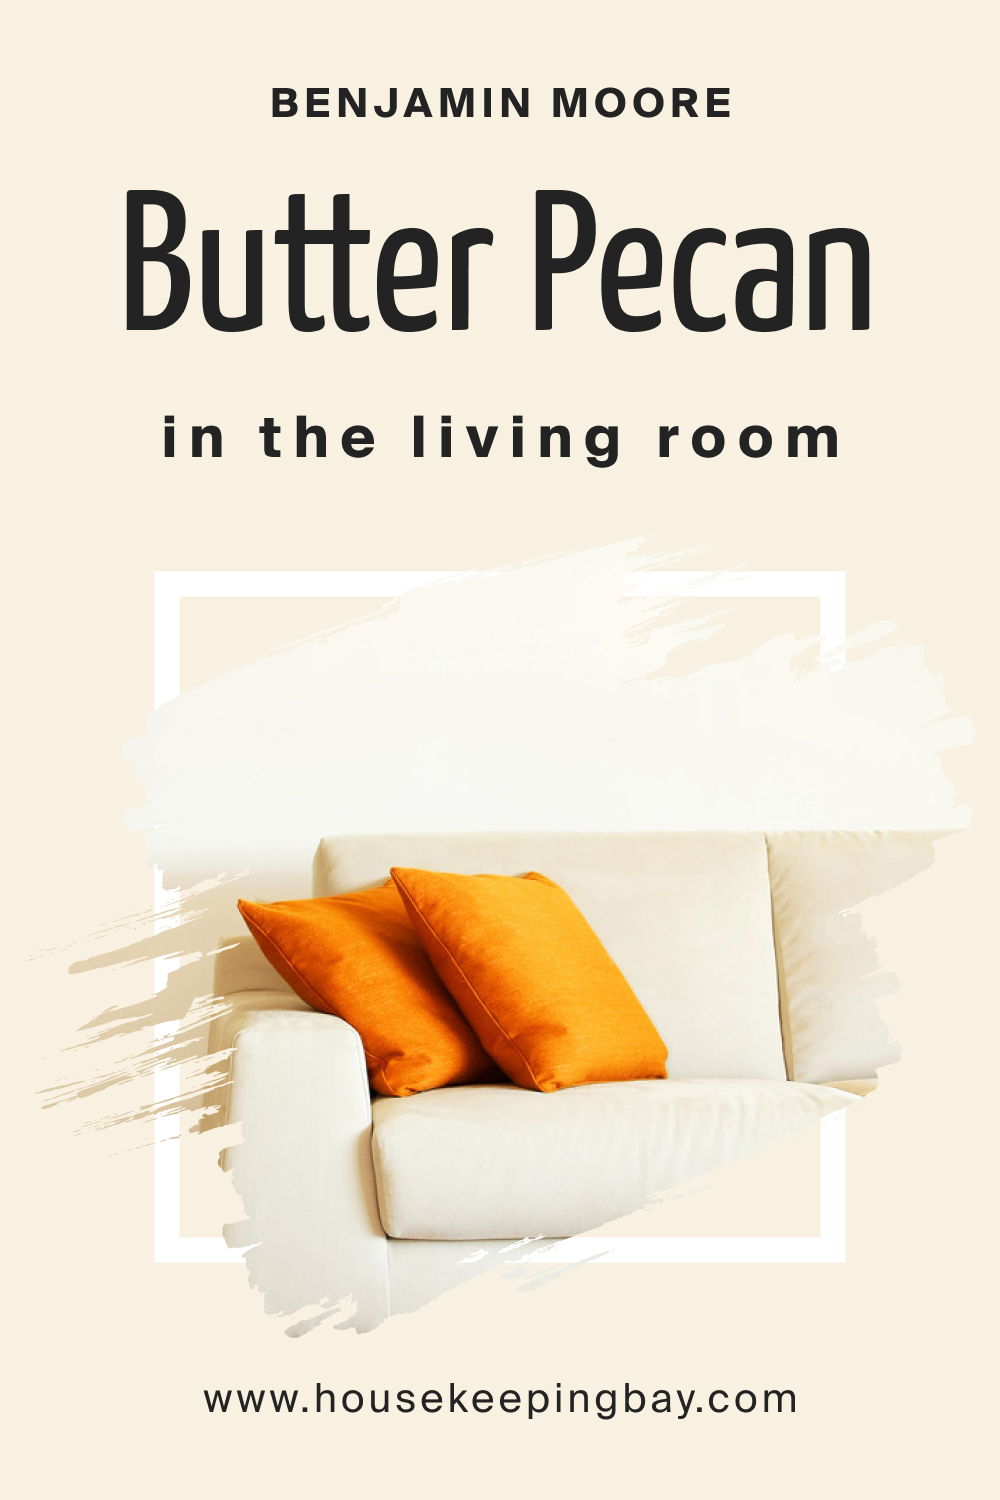 Benjamin Moore. Butter Pecan OC 89 in the Living Room